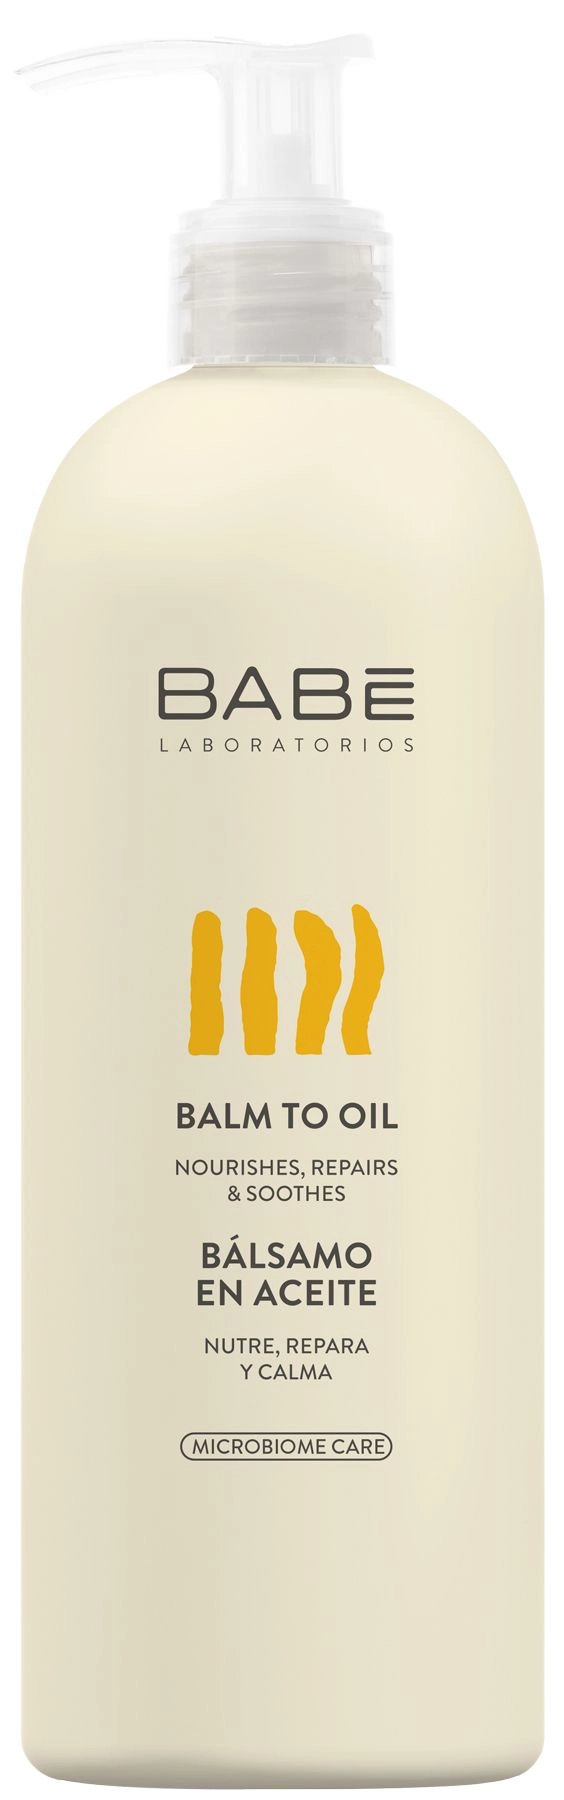 Бальзам-олія для тіла "Емоліент-трансформер" - BABE Laboratorios Balm To Oil, 500 мл - фото N1